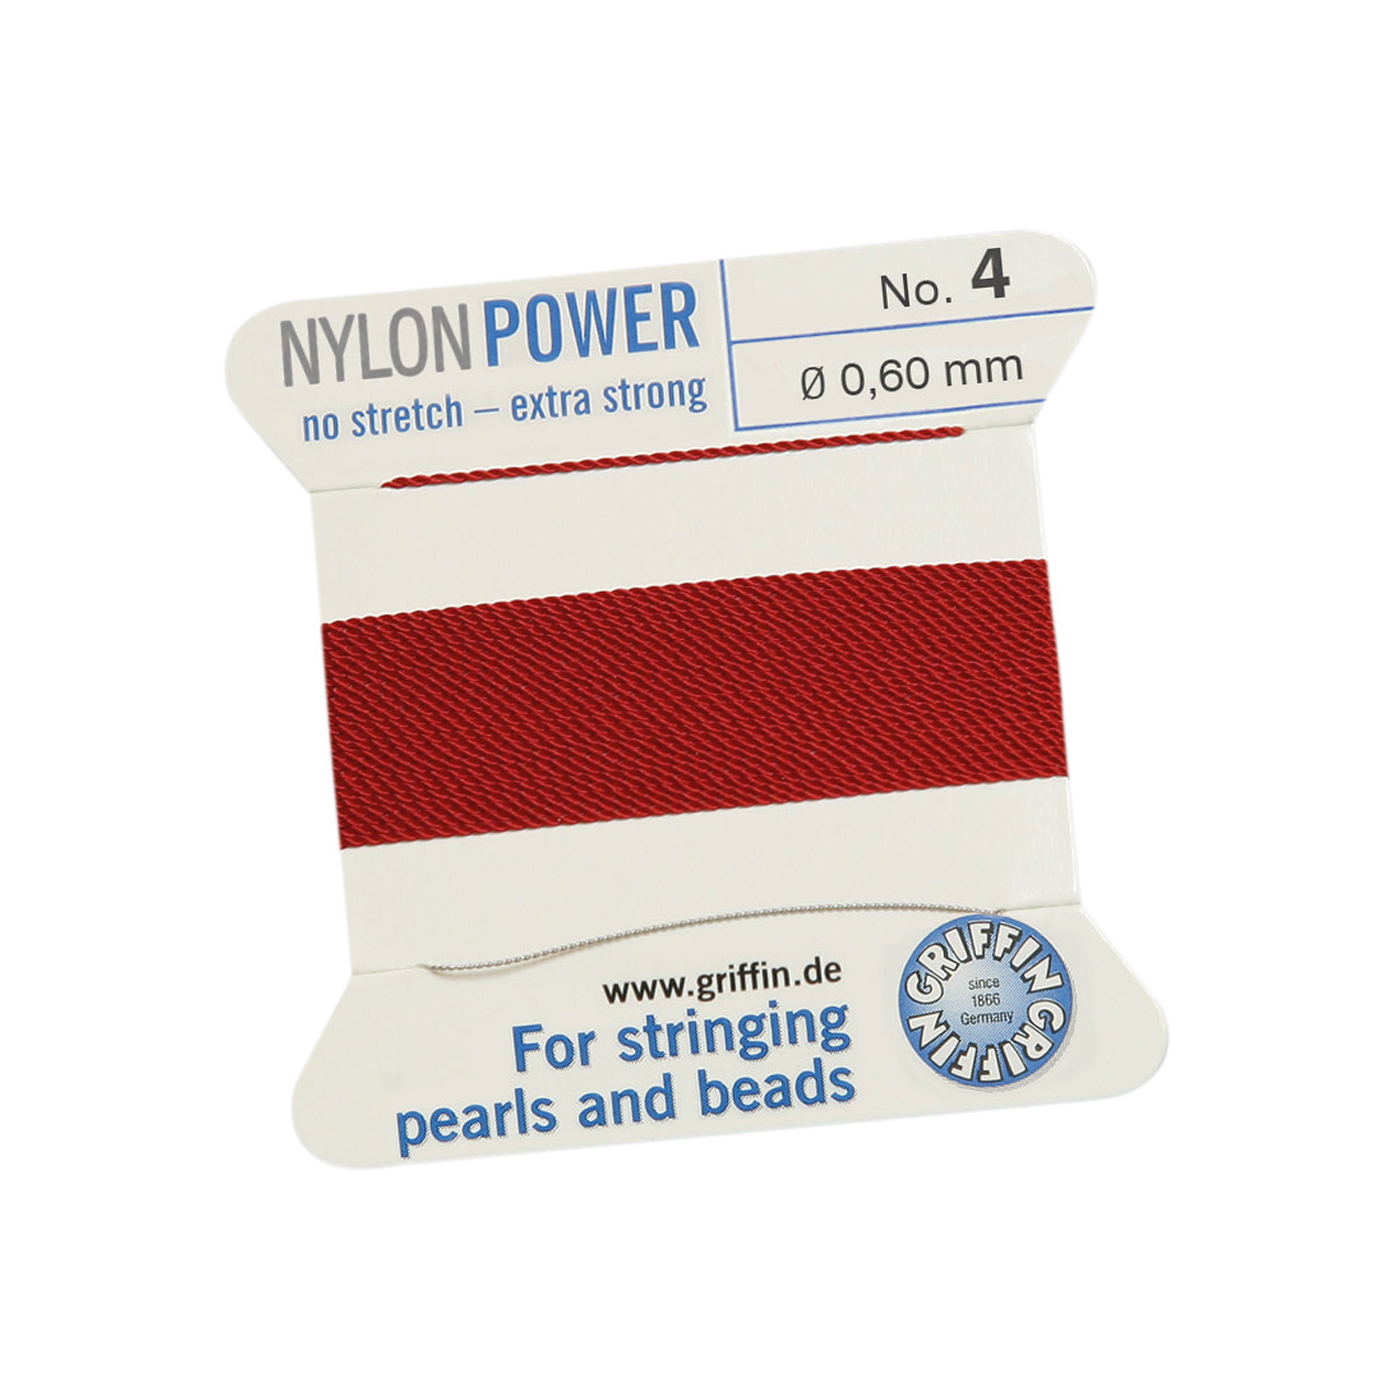 Bead Cord NylonPower, Garnet Red, No. 4 - 2 m